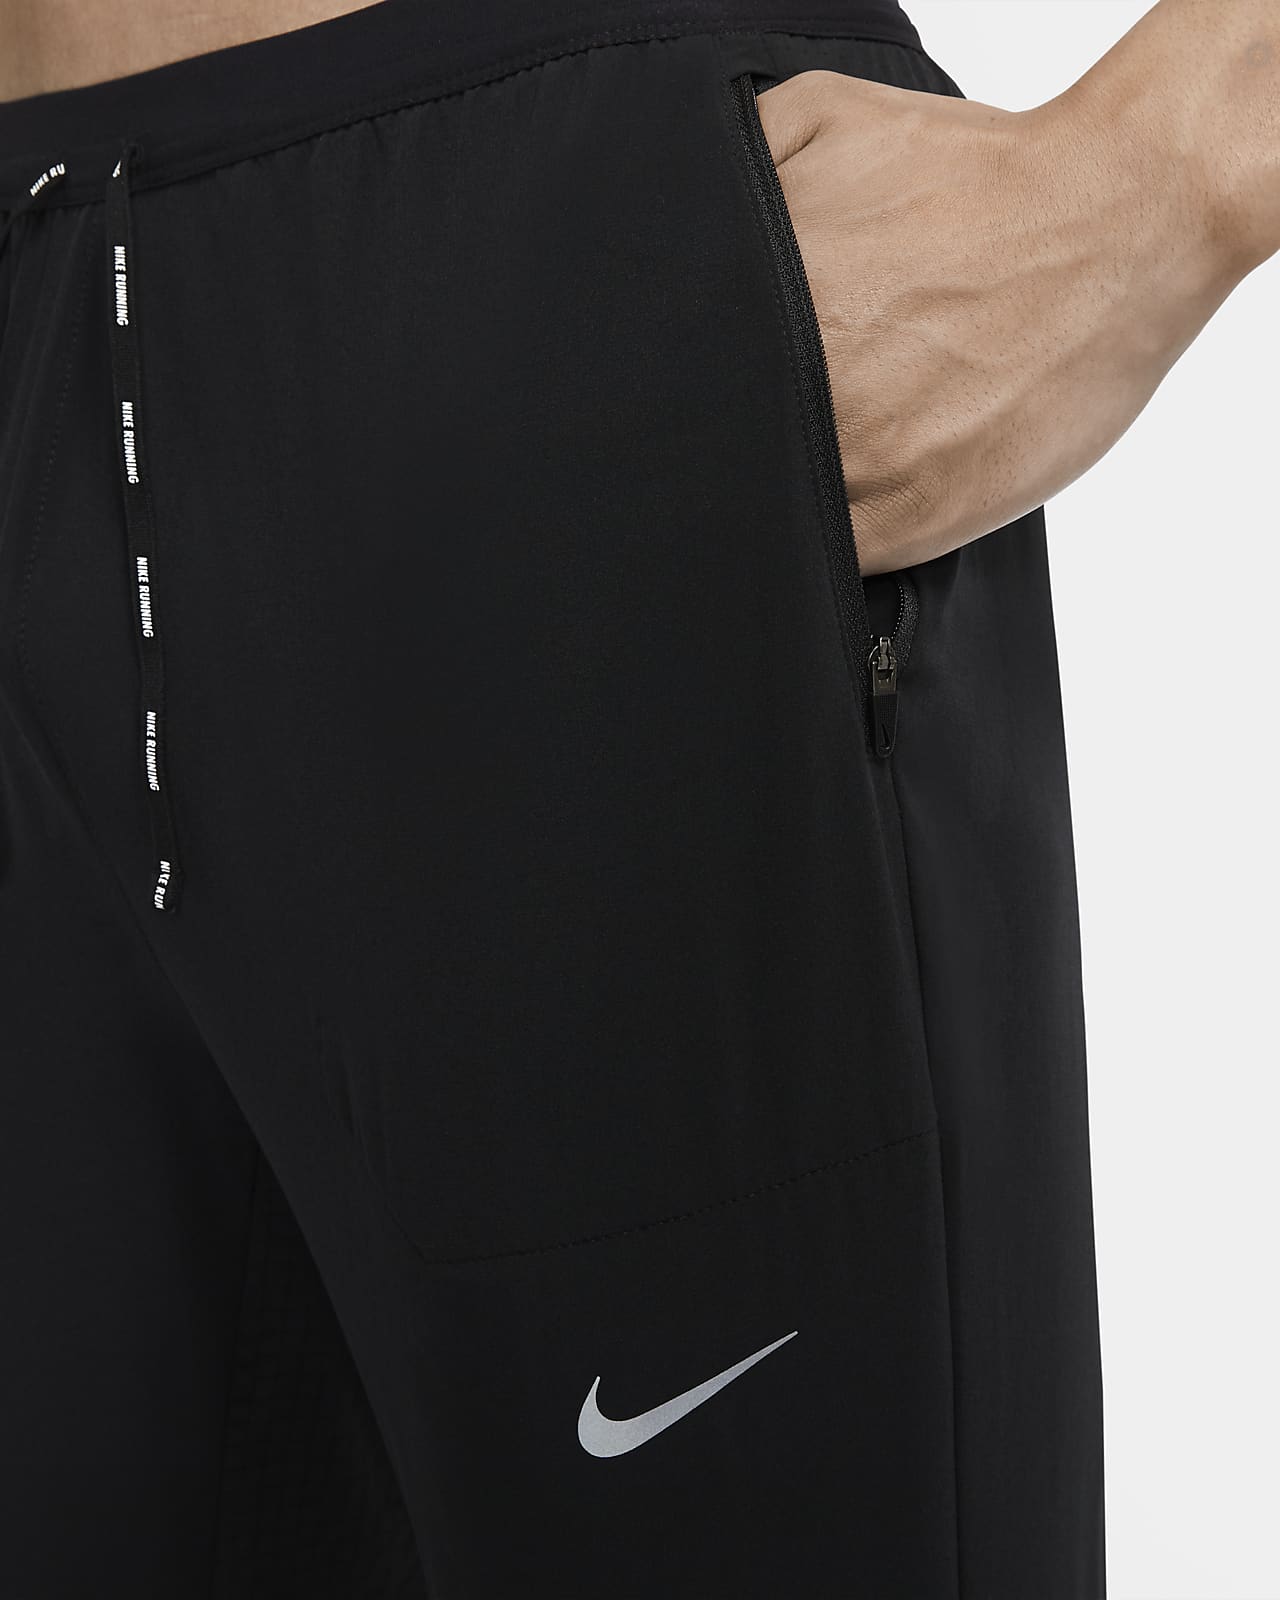 Nike Fleece Track Pants  Buy Nike Fleece Track Pants online in India